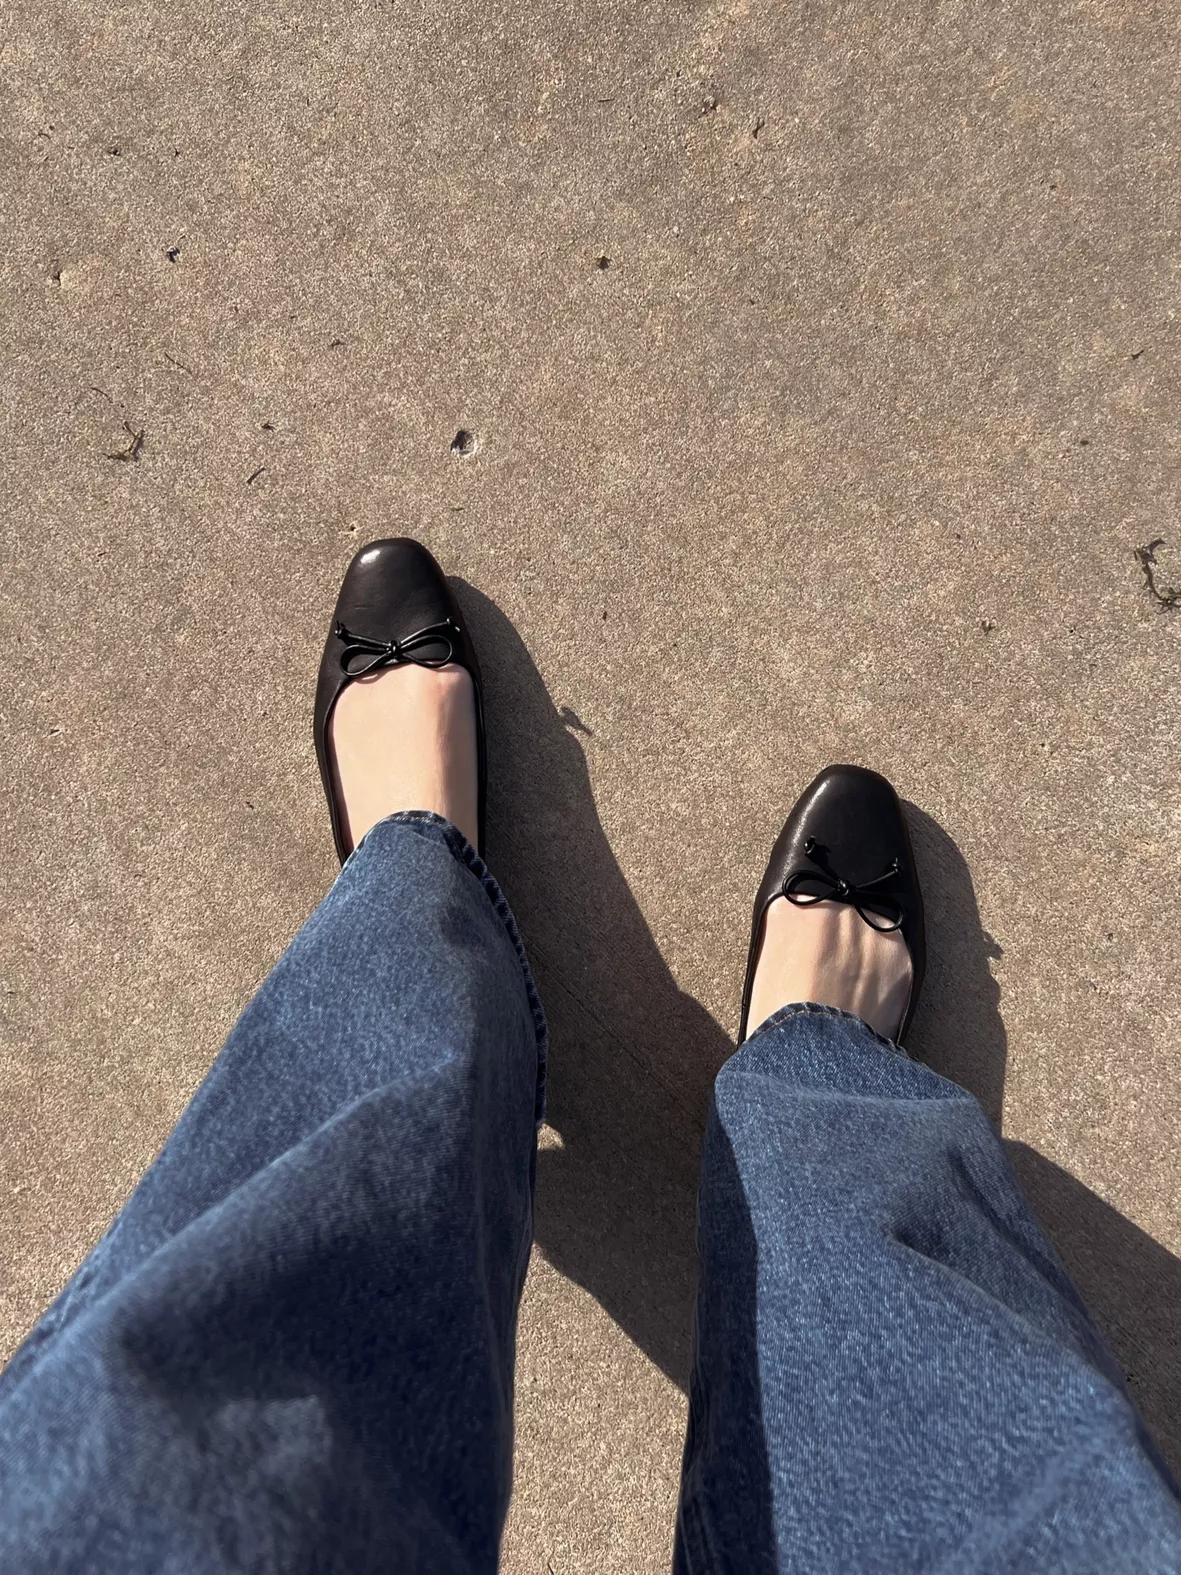 Stratuxx Kaze Womens Flat Sandals … curated on LTK